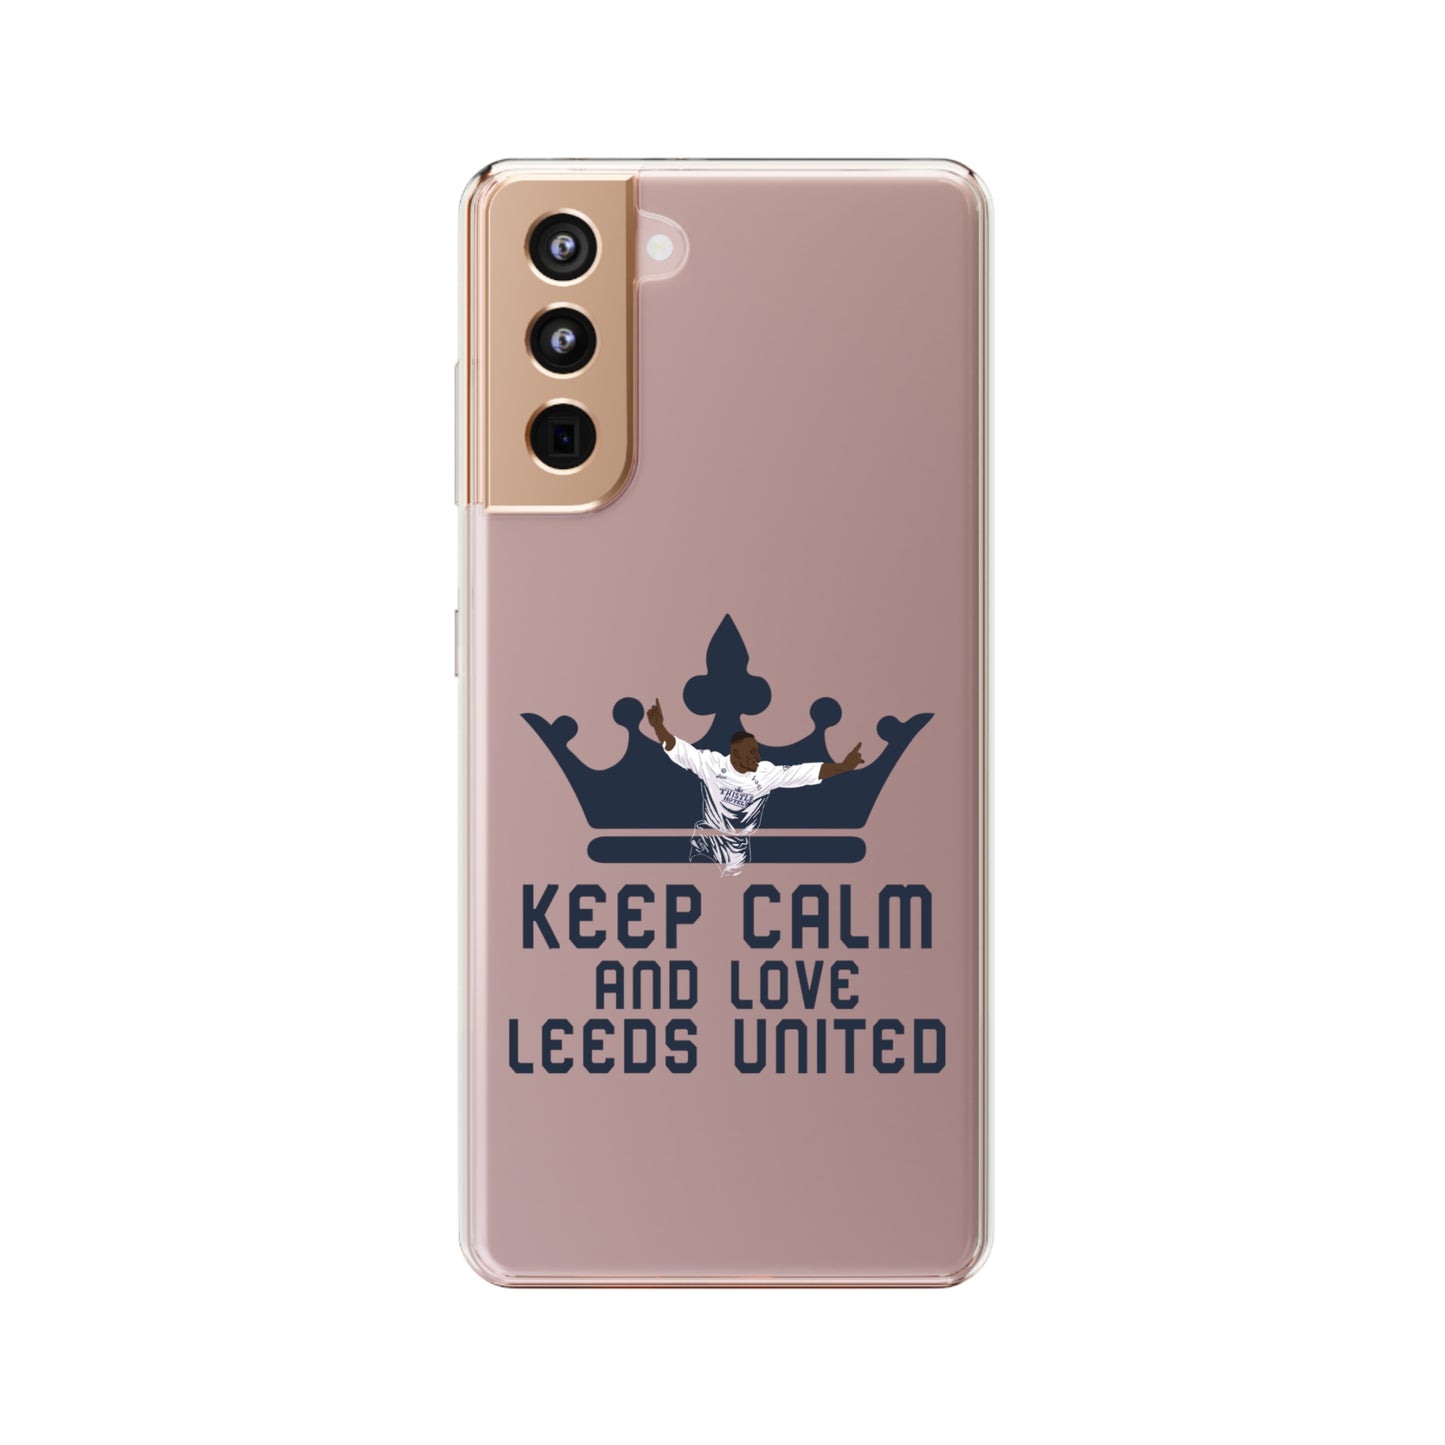 Funda transparente para teléfono -
'Mantén la calma y ama al Leeds United'